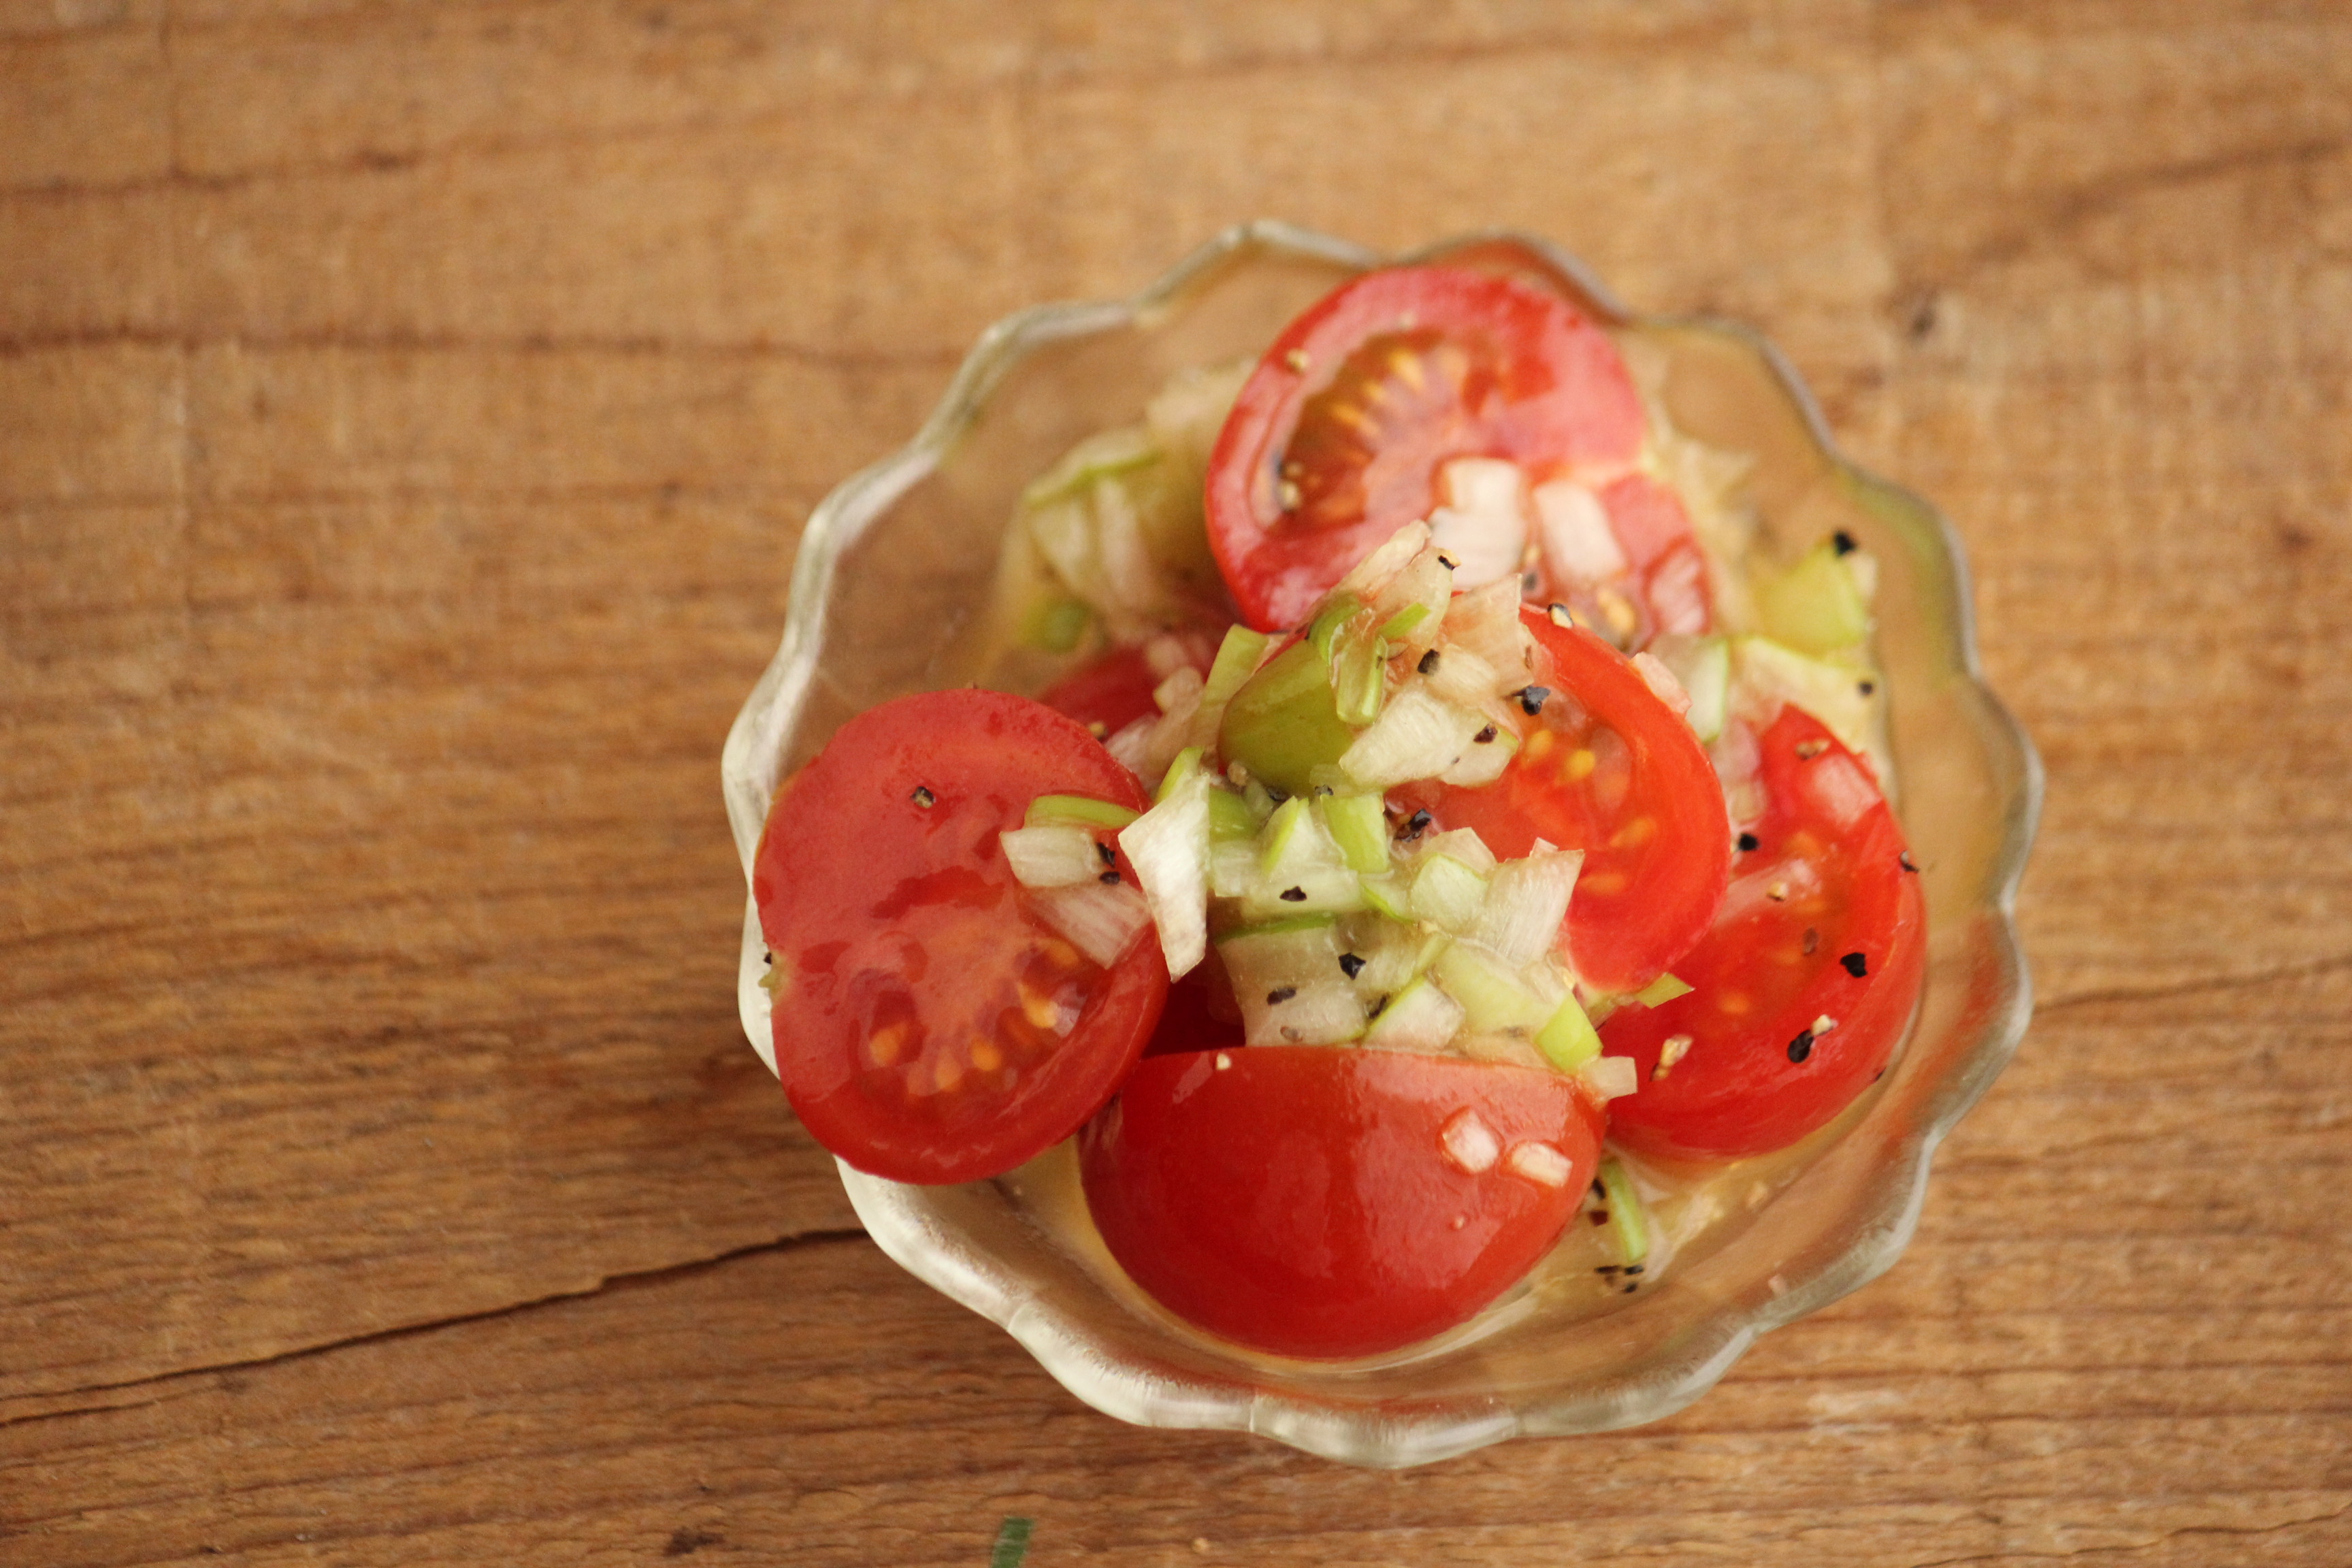 ミニトマトのねぎナムル ささッと作れるおつまみにも副菜にもレシピ ビジュアル系フード Powered By ライブドアブログ